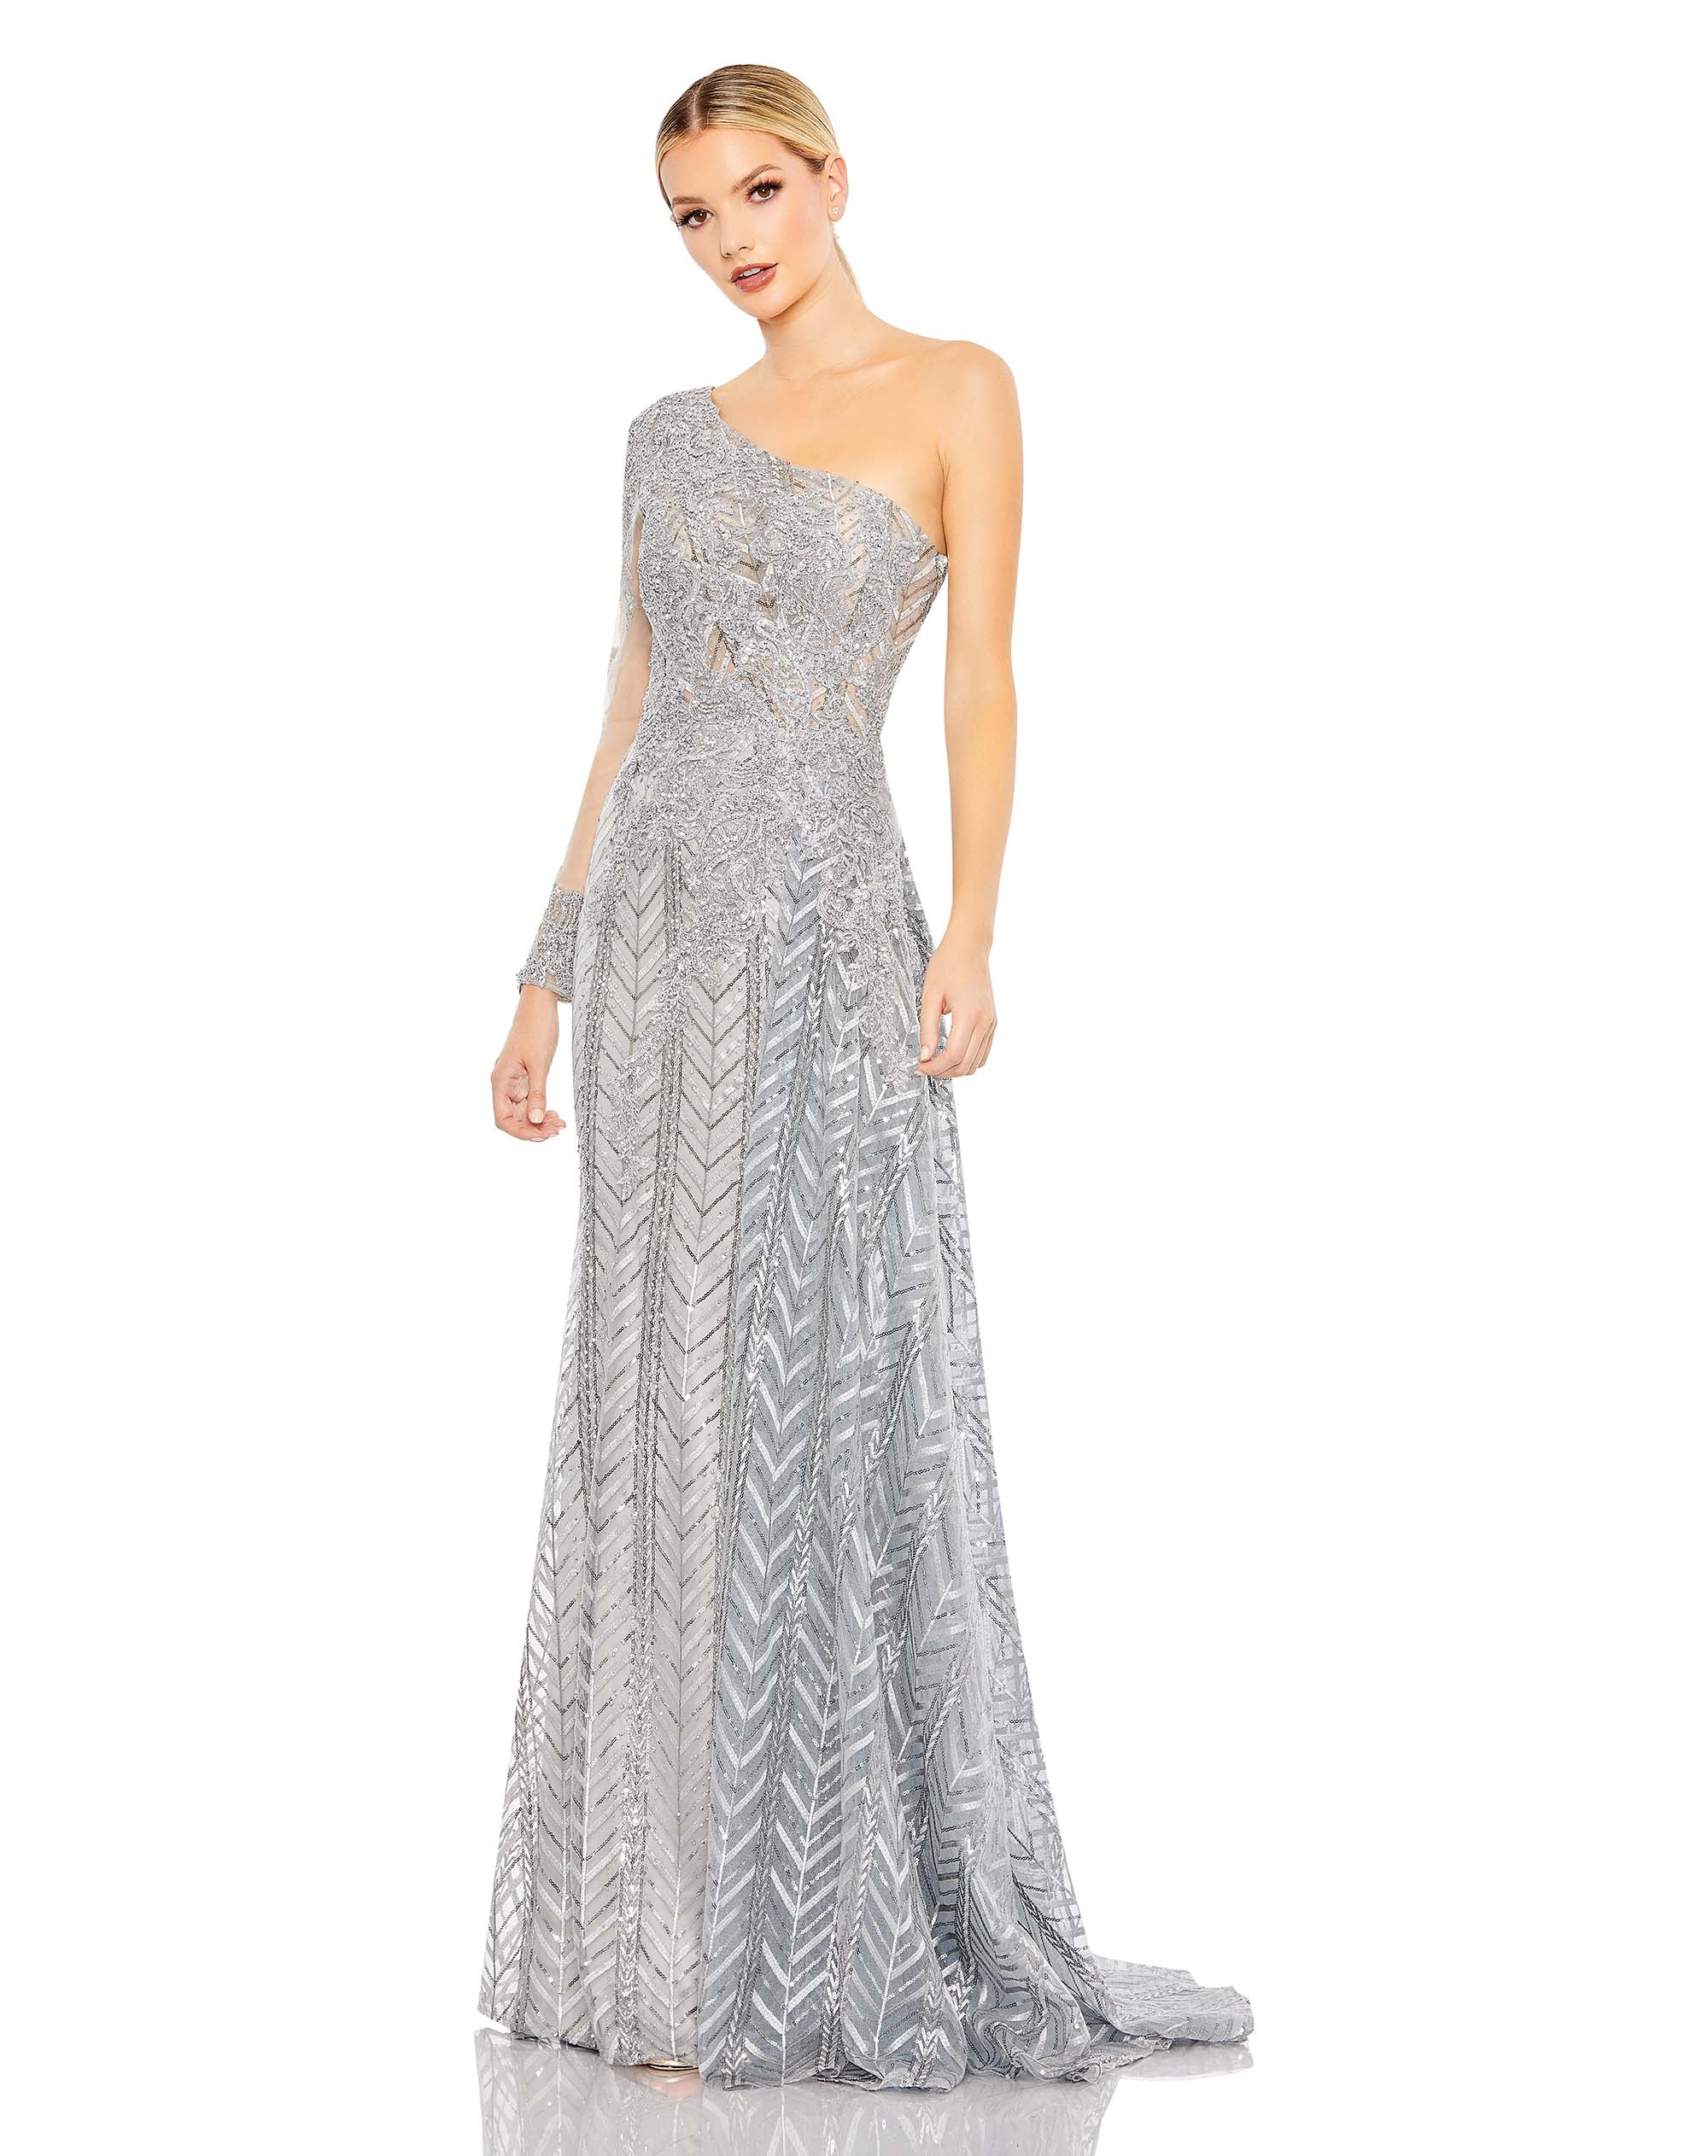 Embellished One Shoulder A Line Dress – Mac Duggal